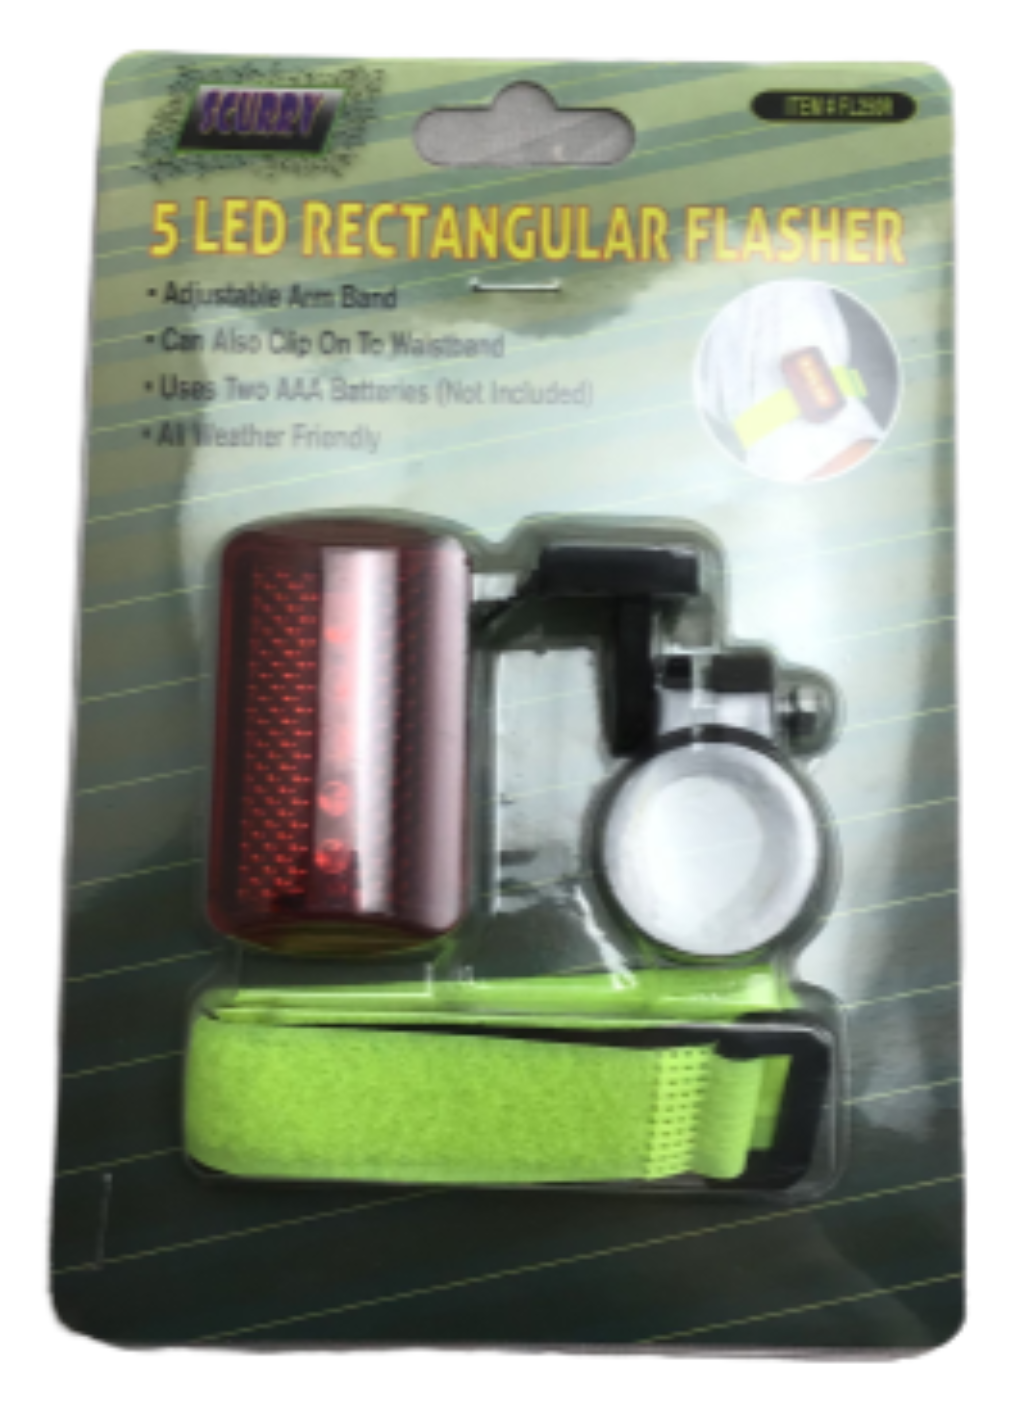 5 LED Rectangular Flasher